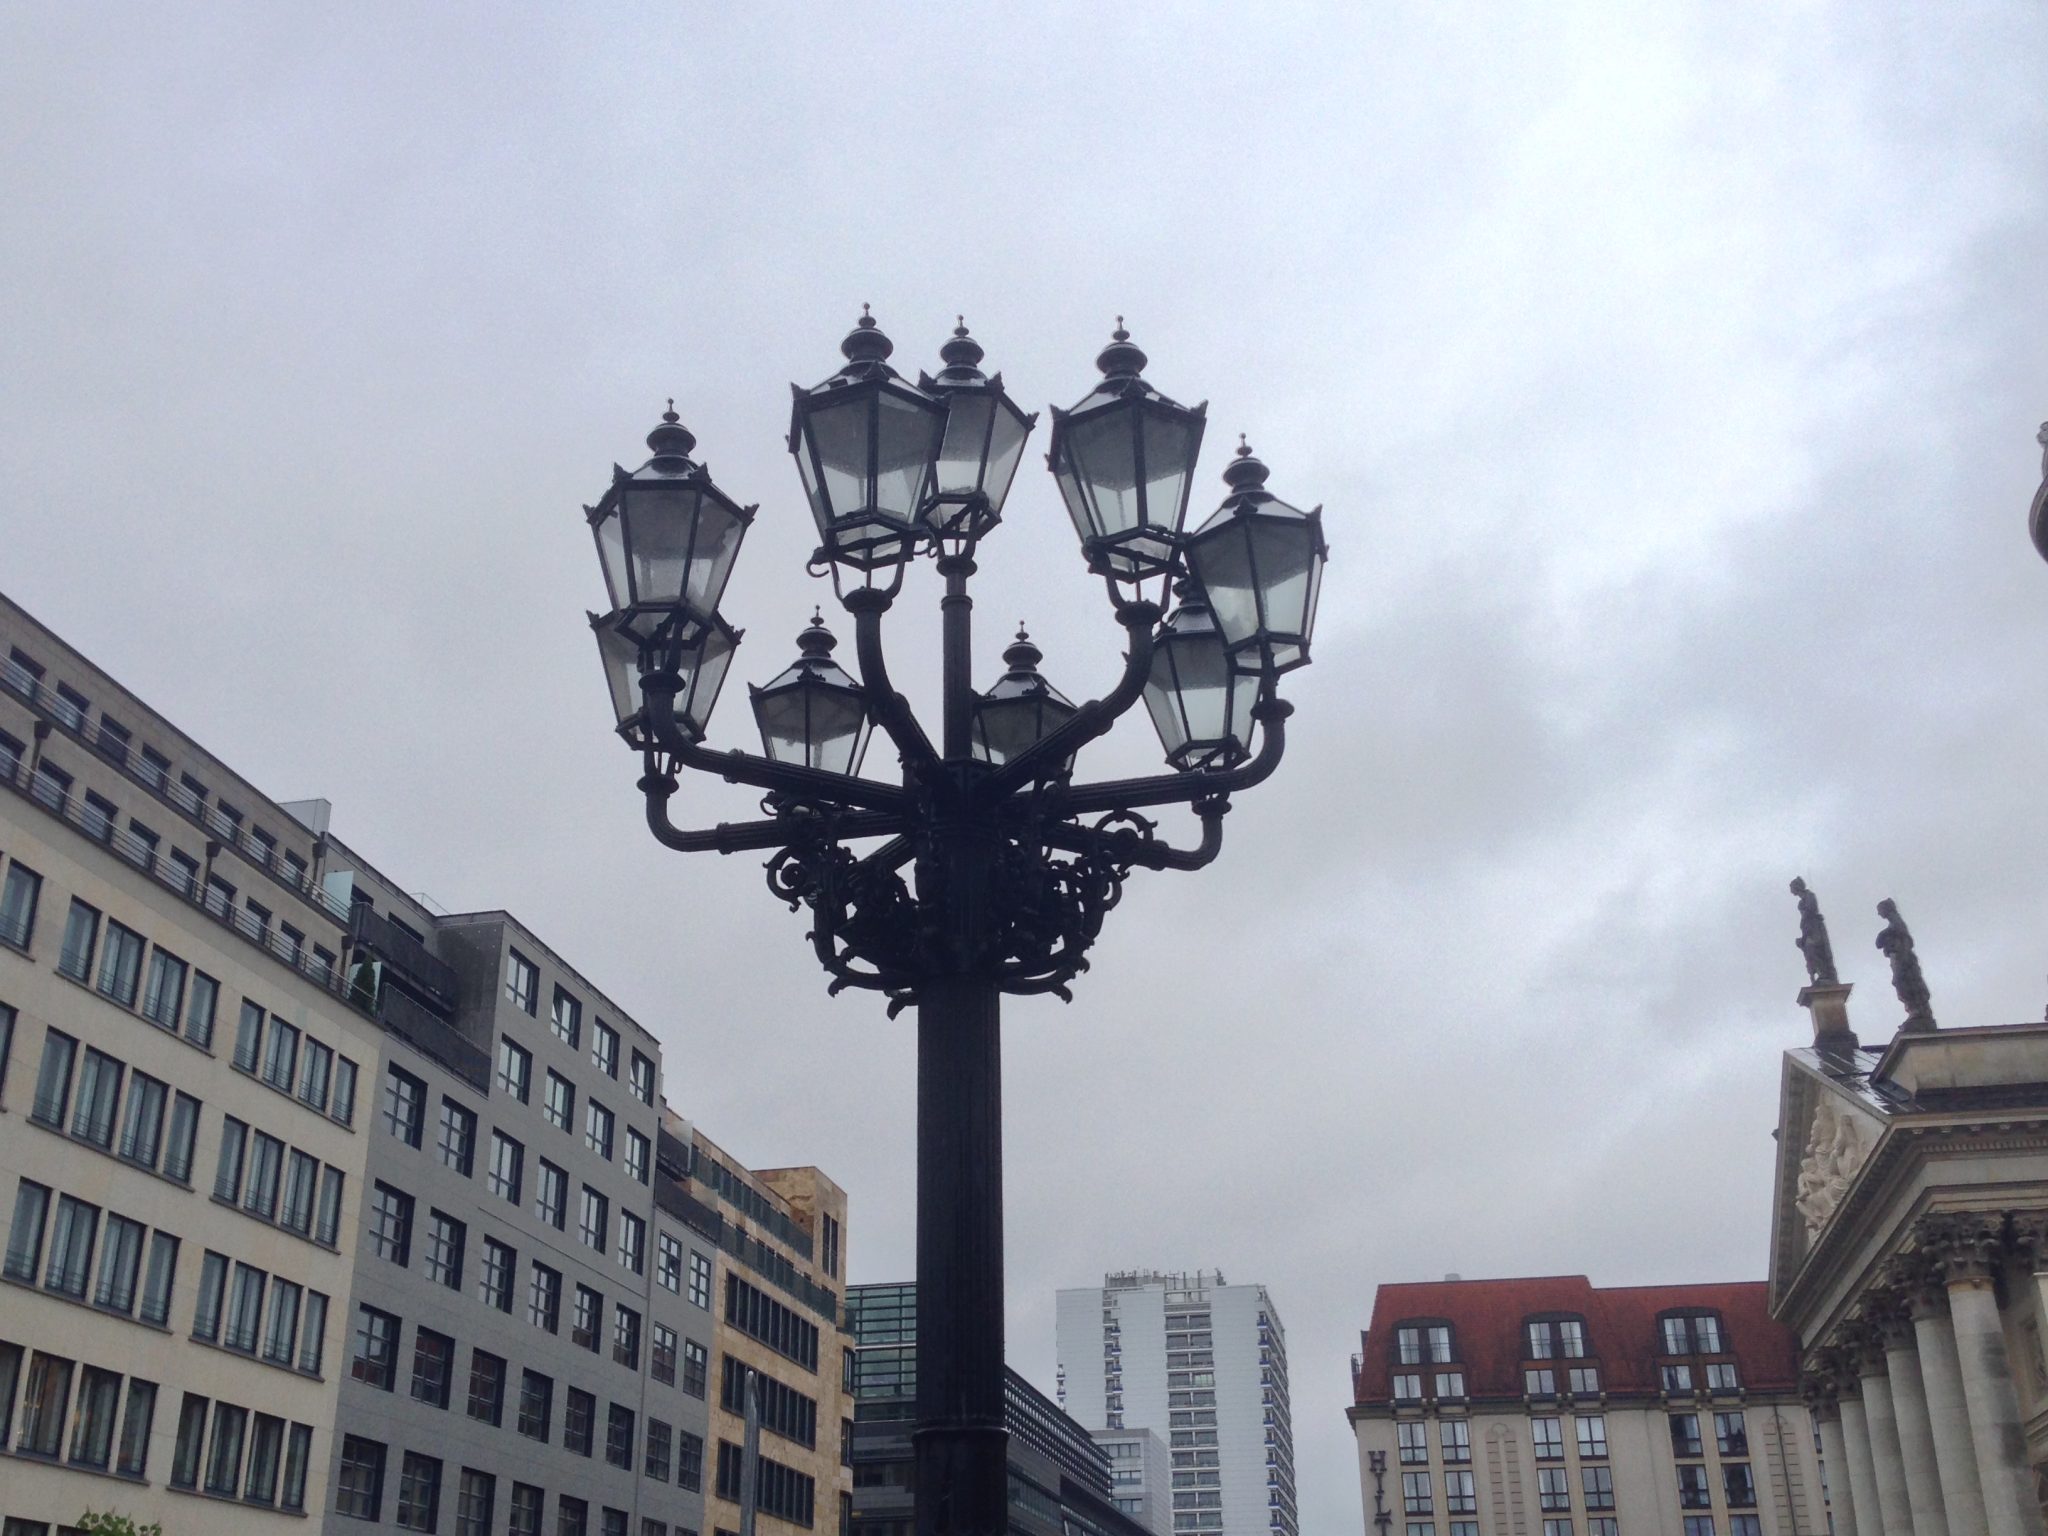 Lantern cluster, Gendarmenmarkt, Berlin, Germany